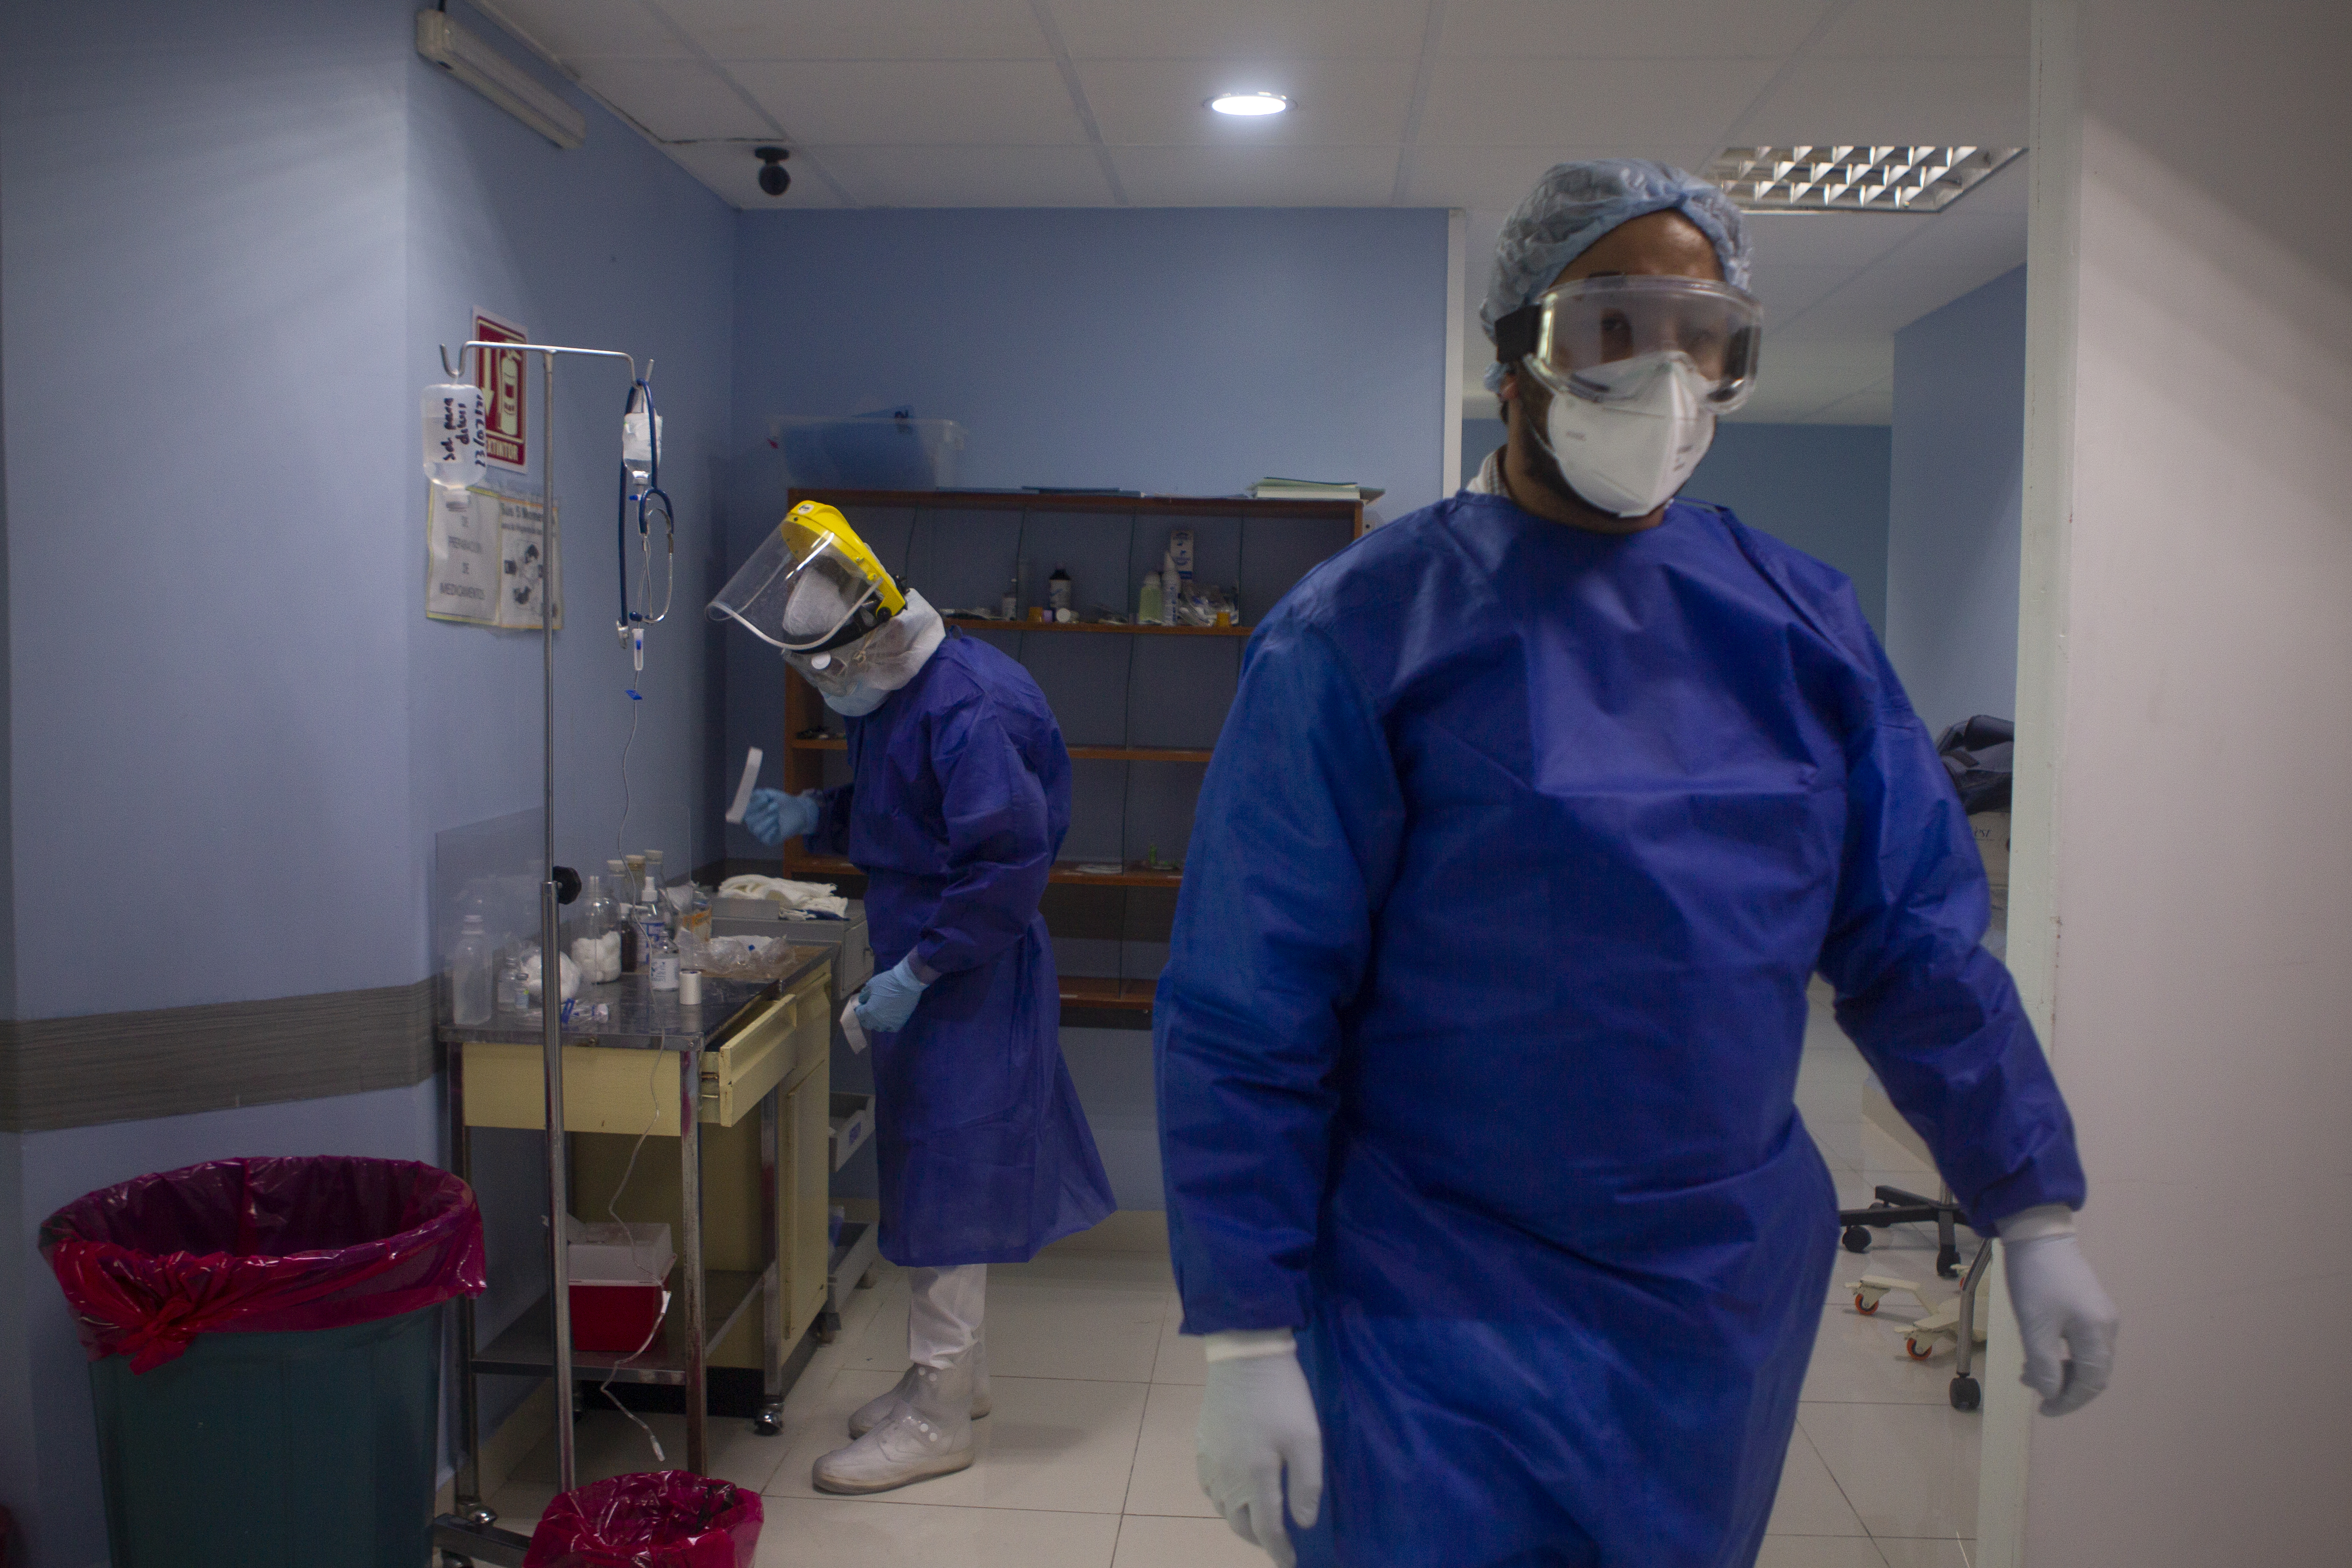 Trabajadores de la salud contratados durante la pandemia del COVID-19 “no serán despedidos”: AMLO